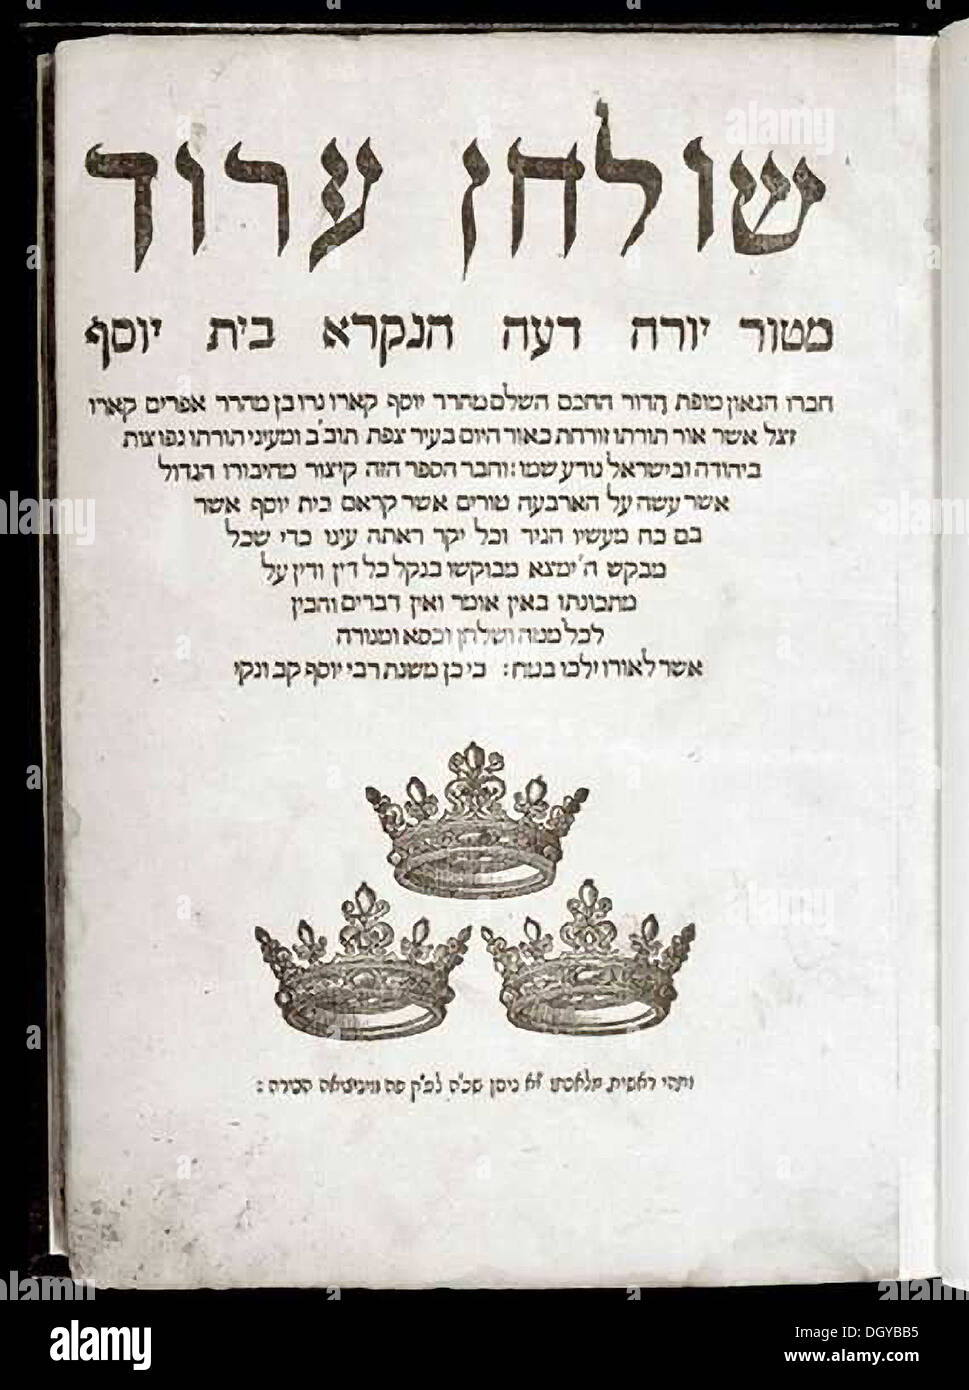 5655. die Shulchan Aruch, auf Hebräisch "Gedeckten Tisch" ist eine Kodifizierung oder schriftliche Anleitung der Halacha, das jüdische Gesetz, komponiert von Rabbi Yosef Karo im 16. Jahrhundert. Es gilt die maßgeblichste Zusammenstellung der Halacha seit dem Talmud. Stockfoto